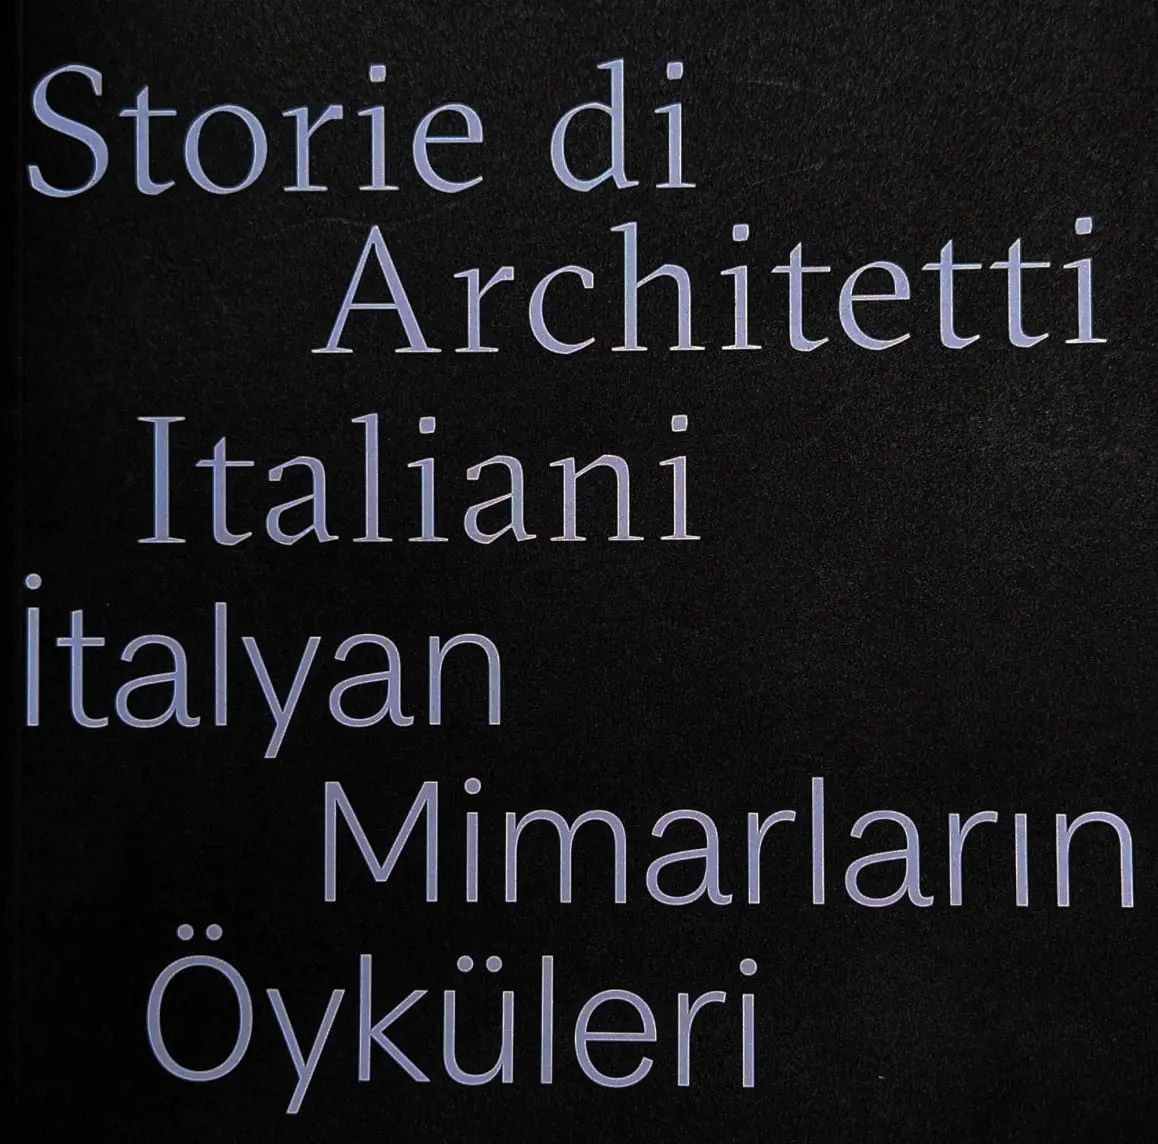 Storie di Architetti Italiani